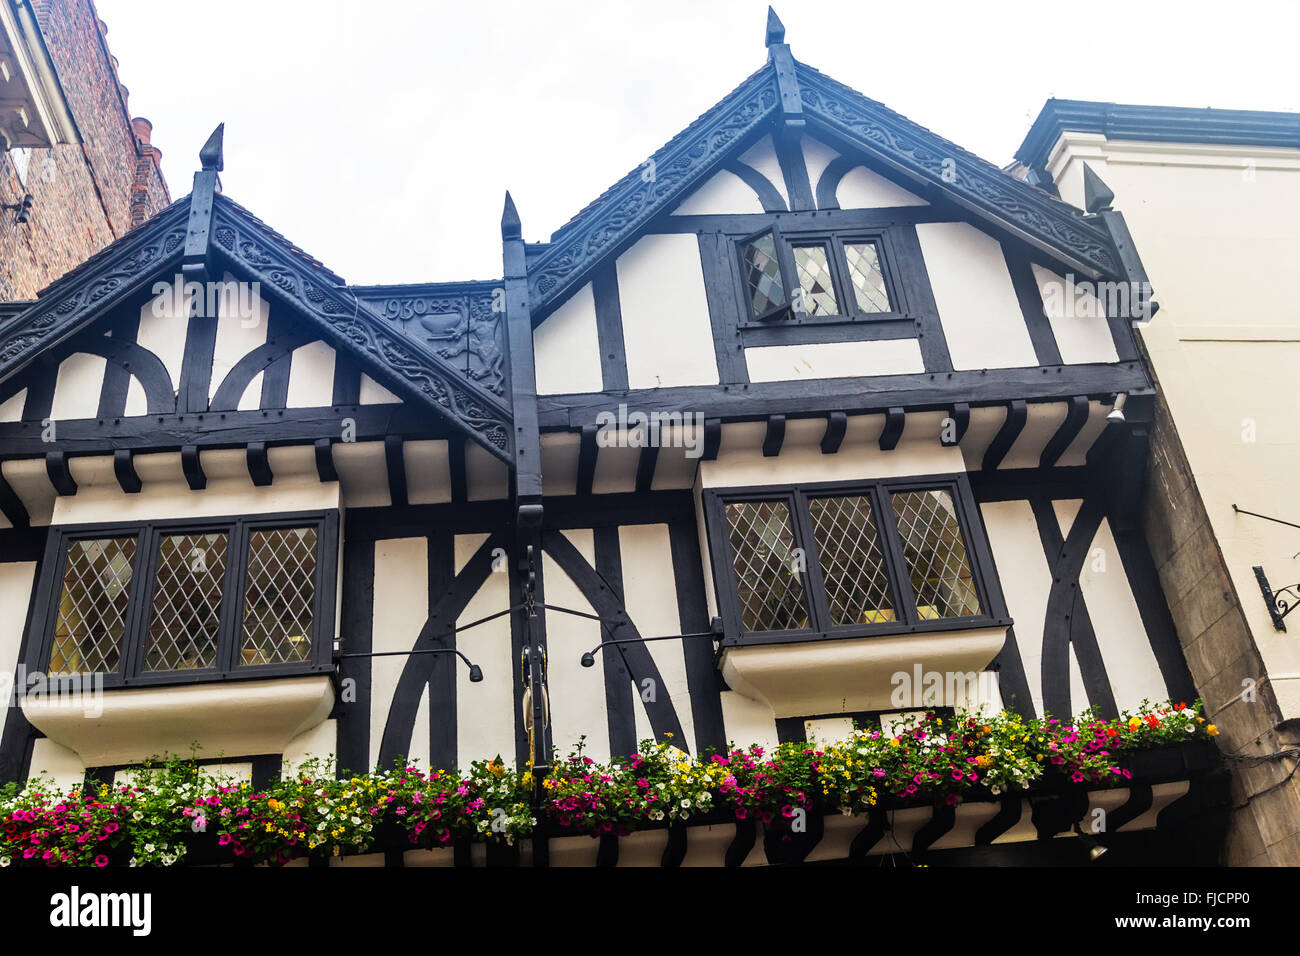 Alte, historische Architektur in York, England, Vereinigtes Königreich Stockfoto